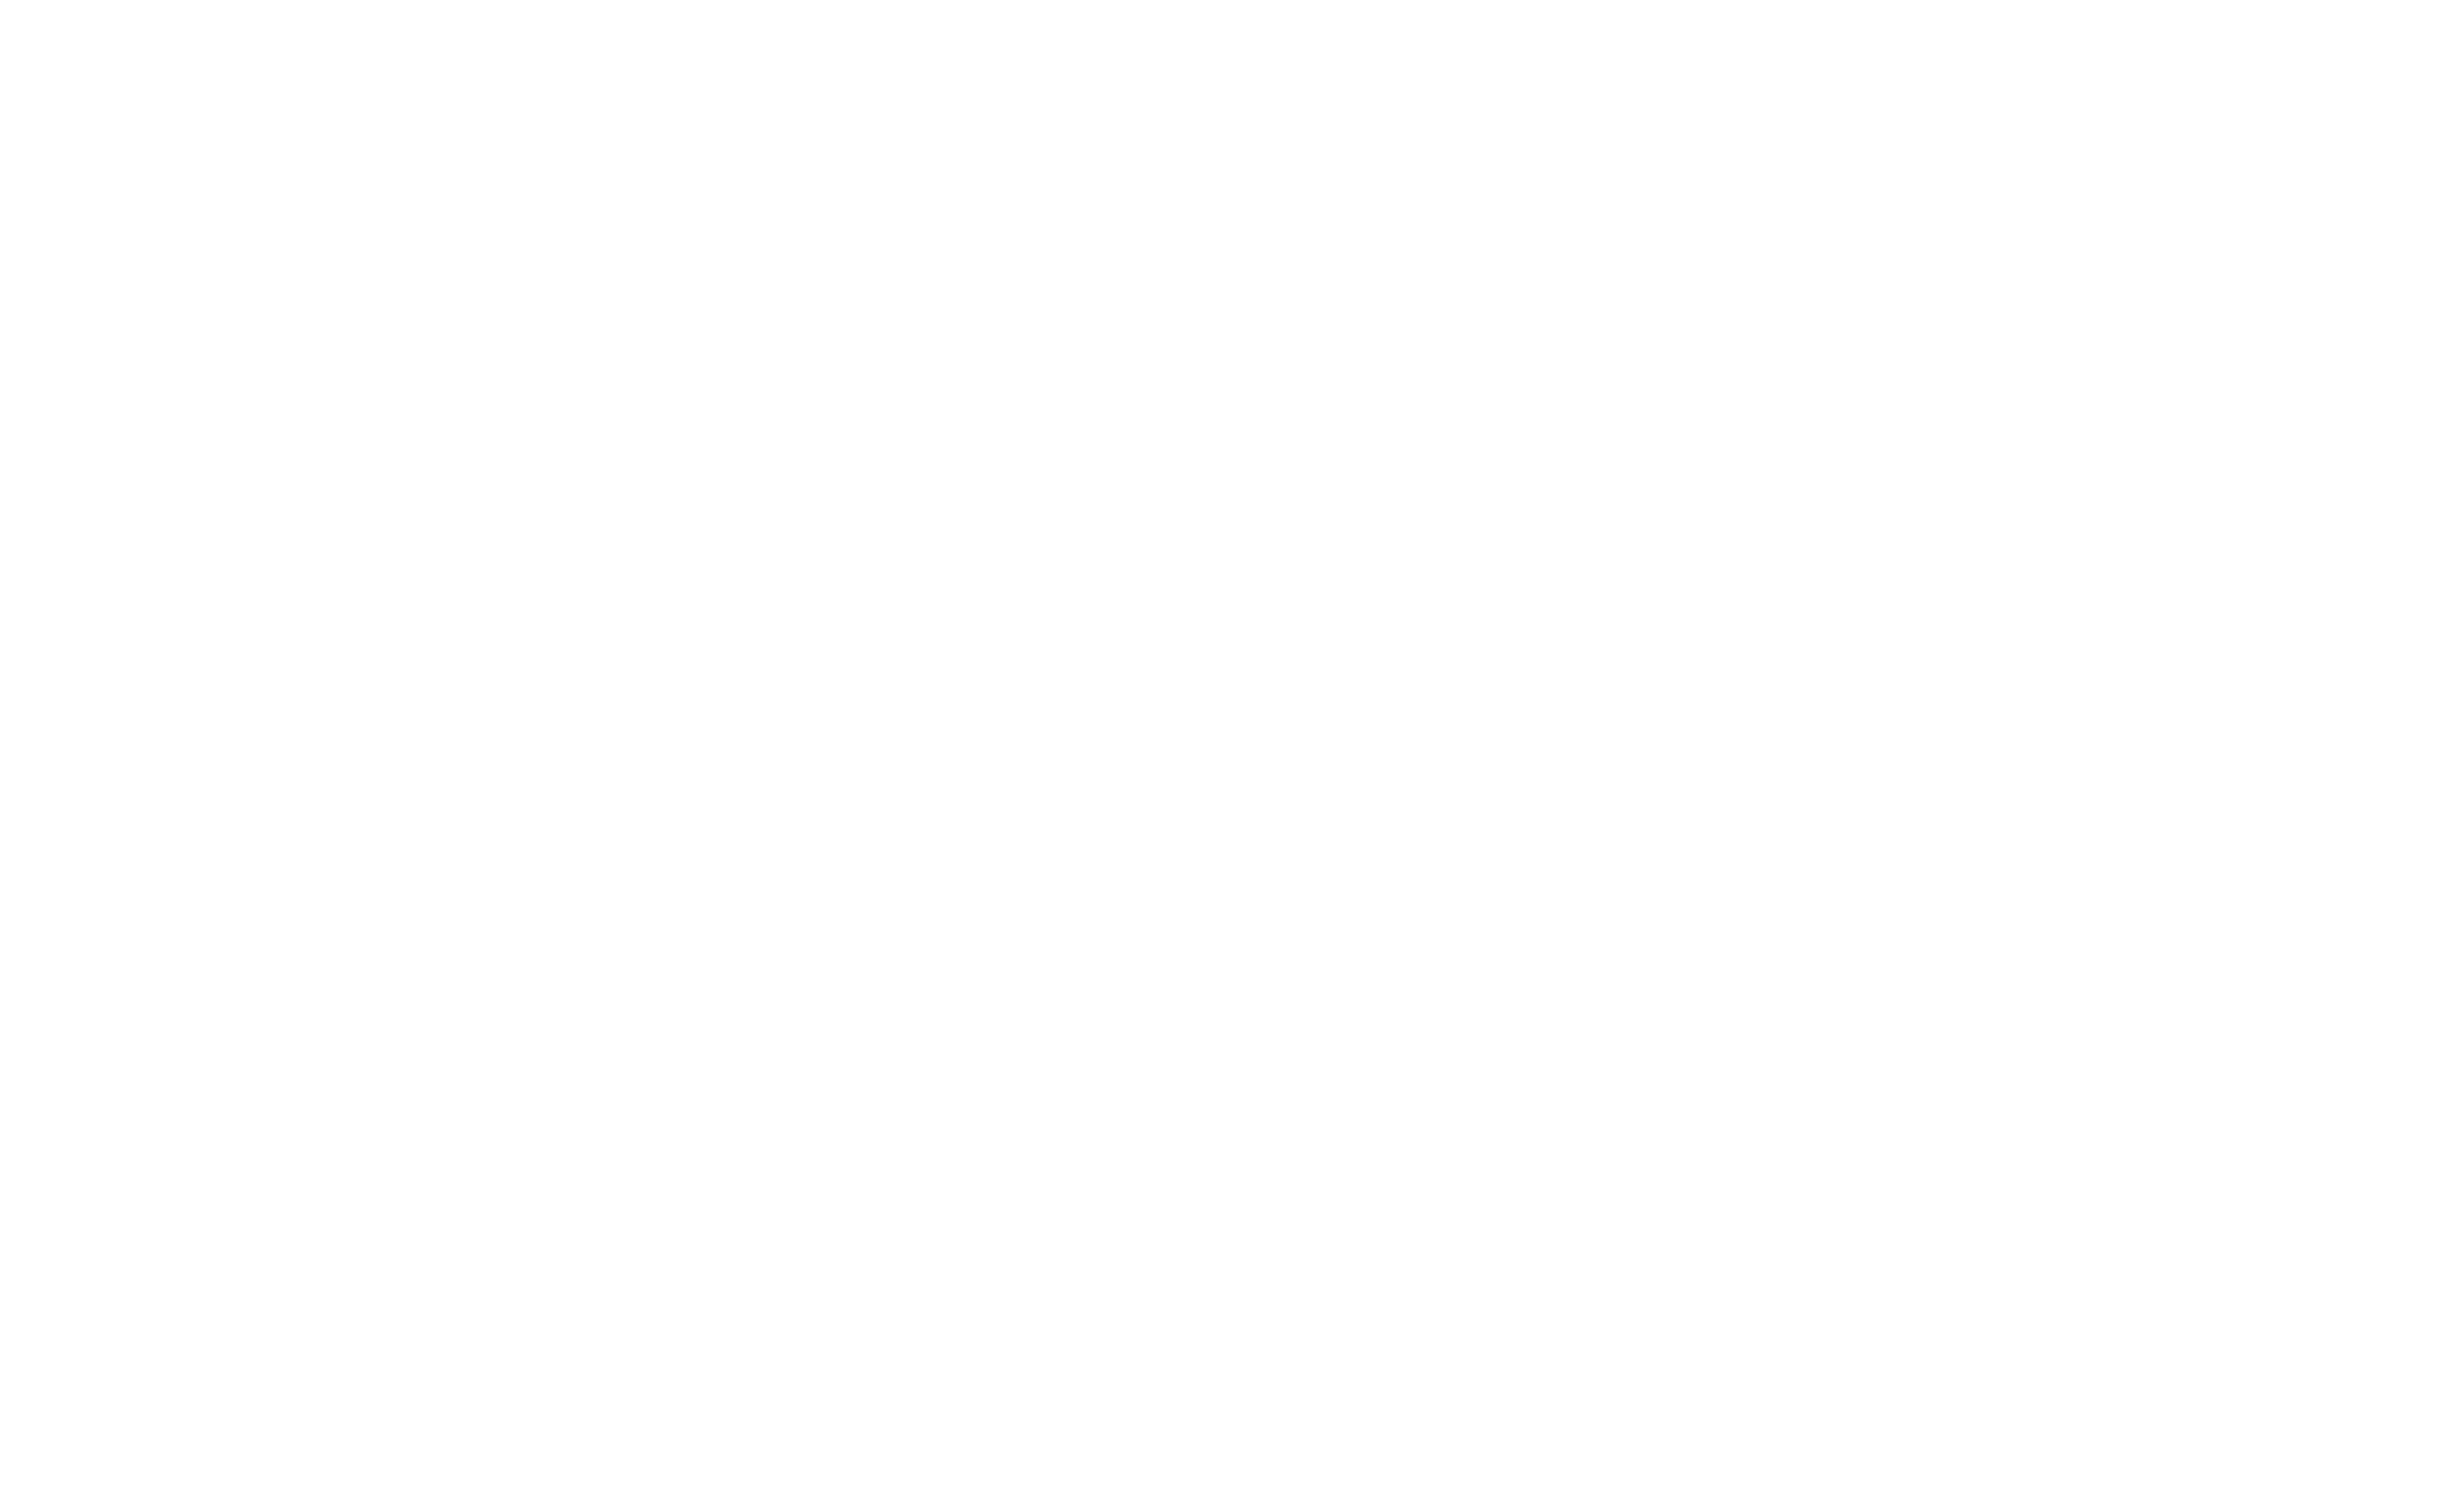 有限会社松崎加工 Welcome to Our Corporate Site